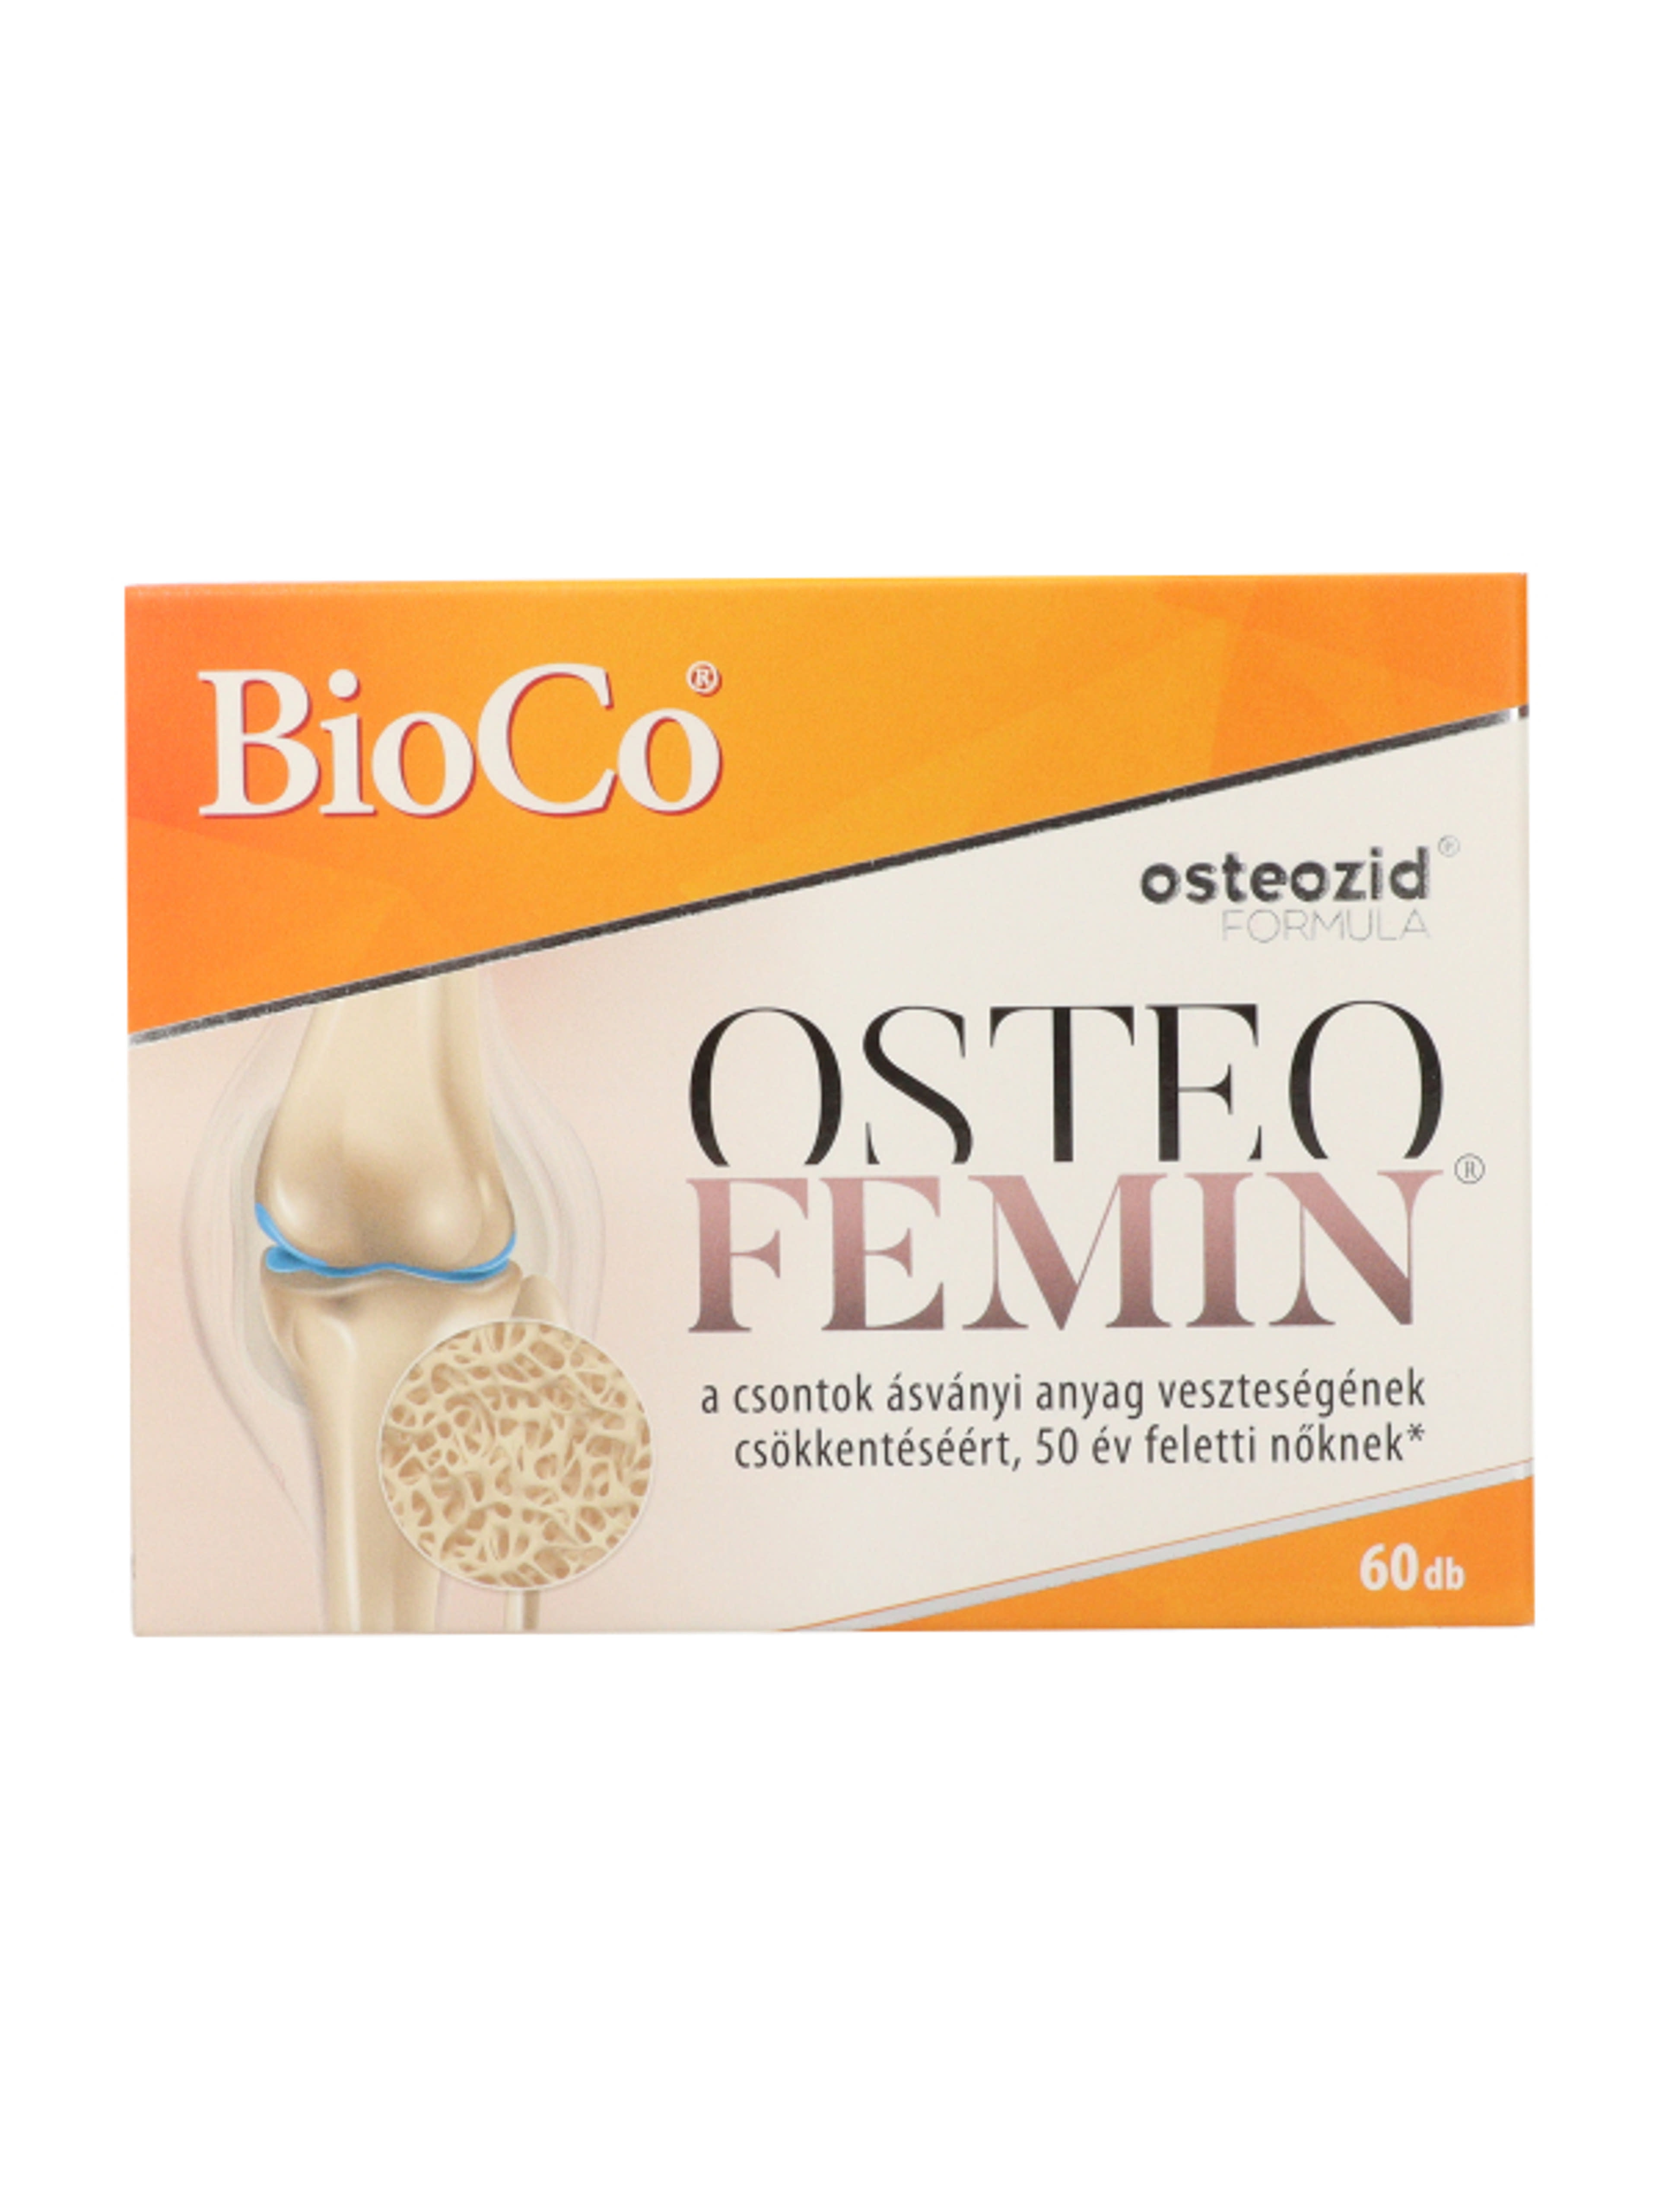 Bioco osteofemin filmtabletta - 60 db-4